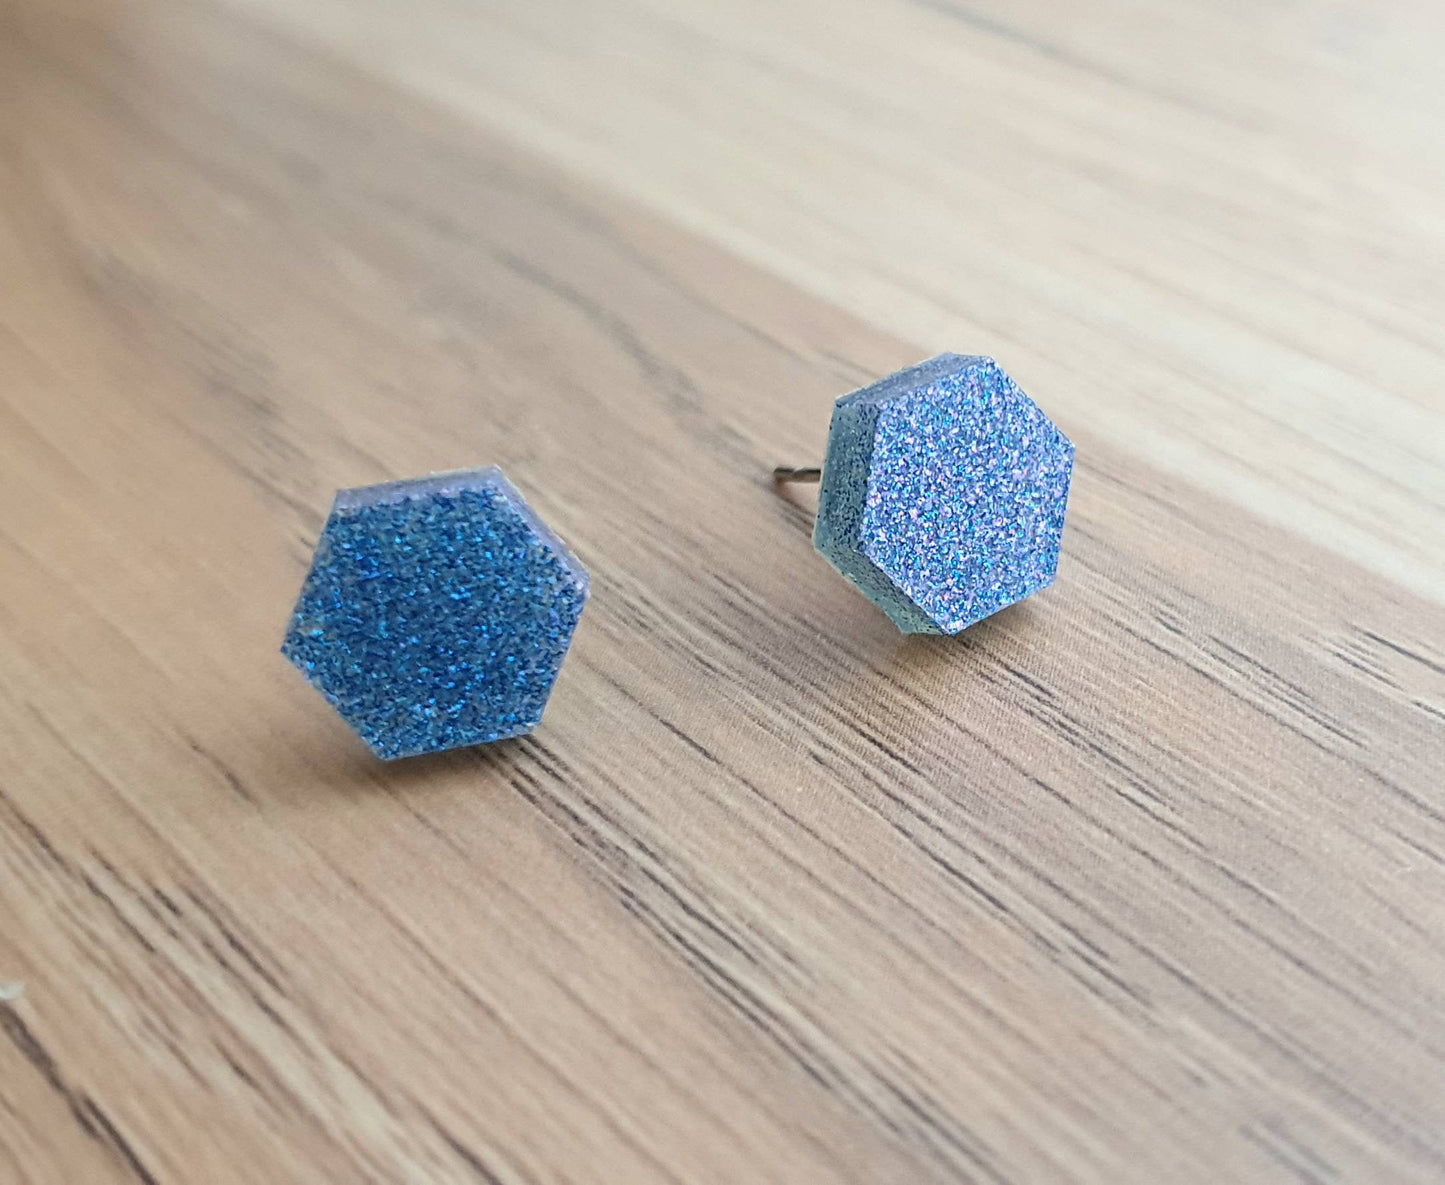 Hexagon Stud Earring, Resin Blue Purple Mix Earrings. Stainless Steel Stud Earrings. 10mm